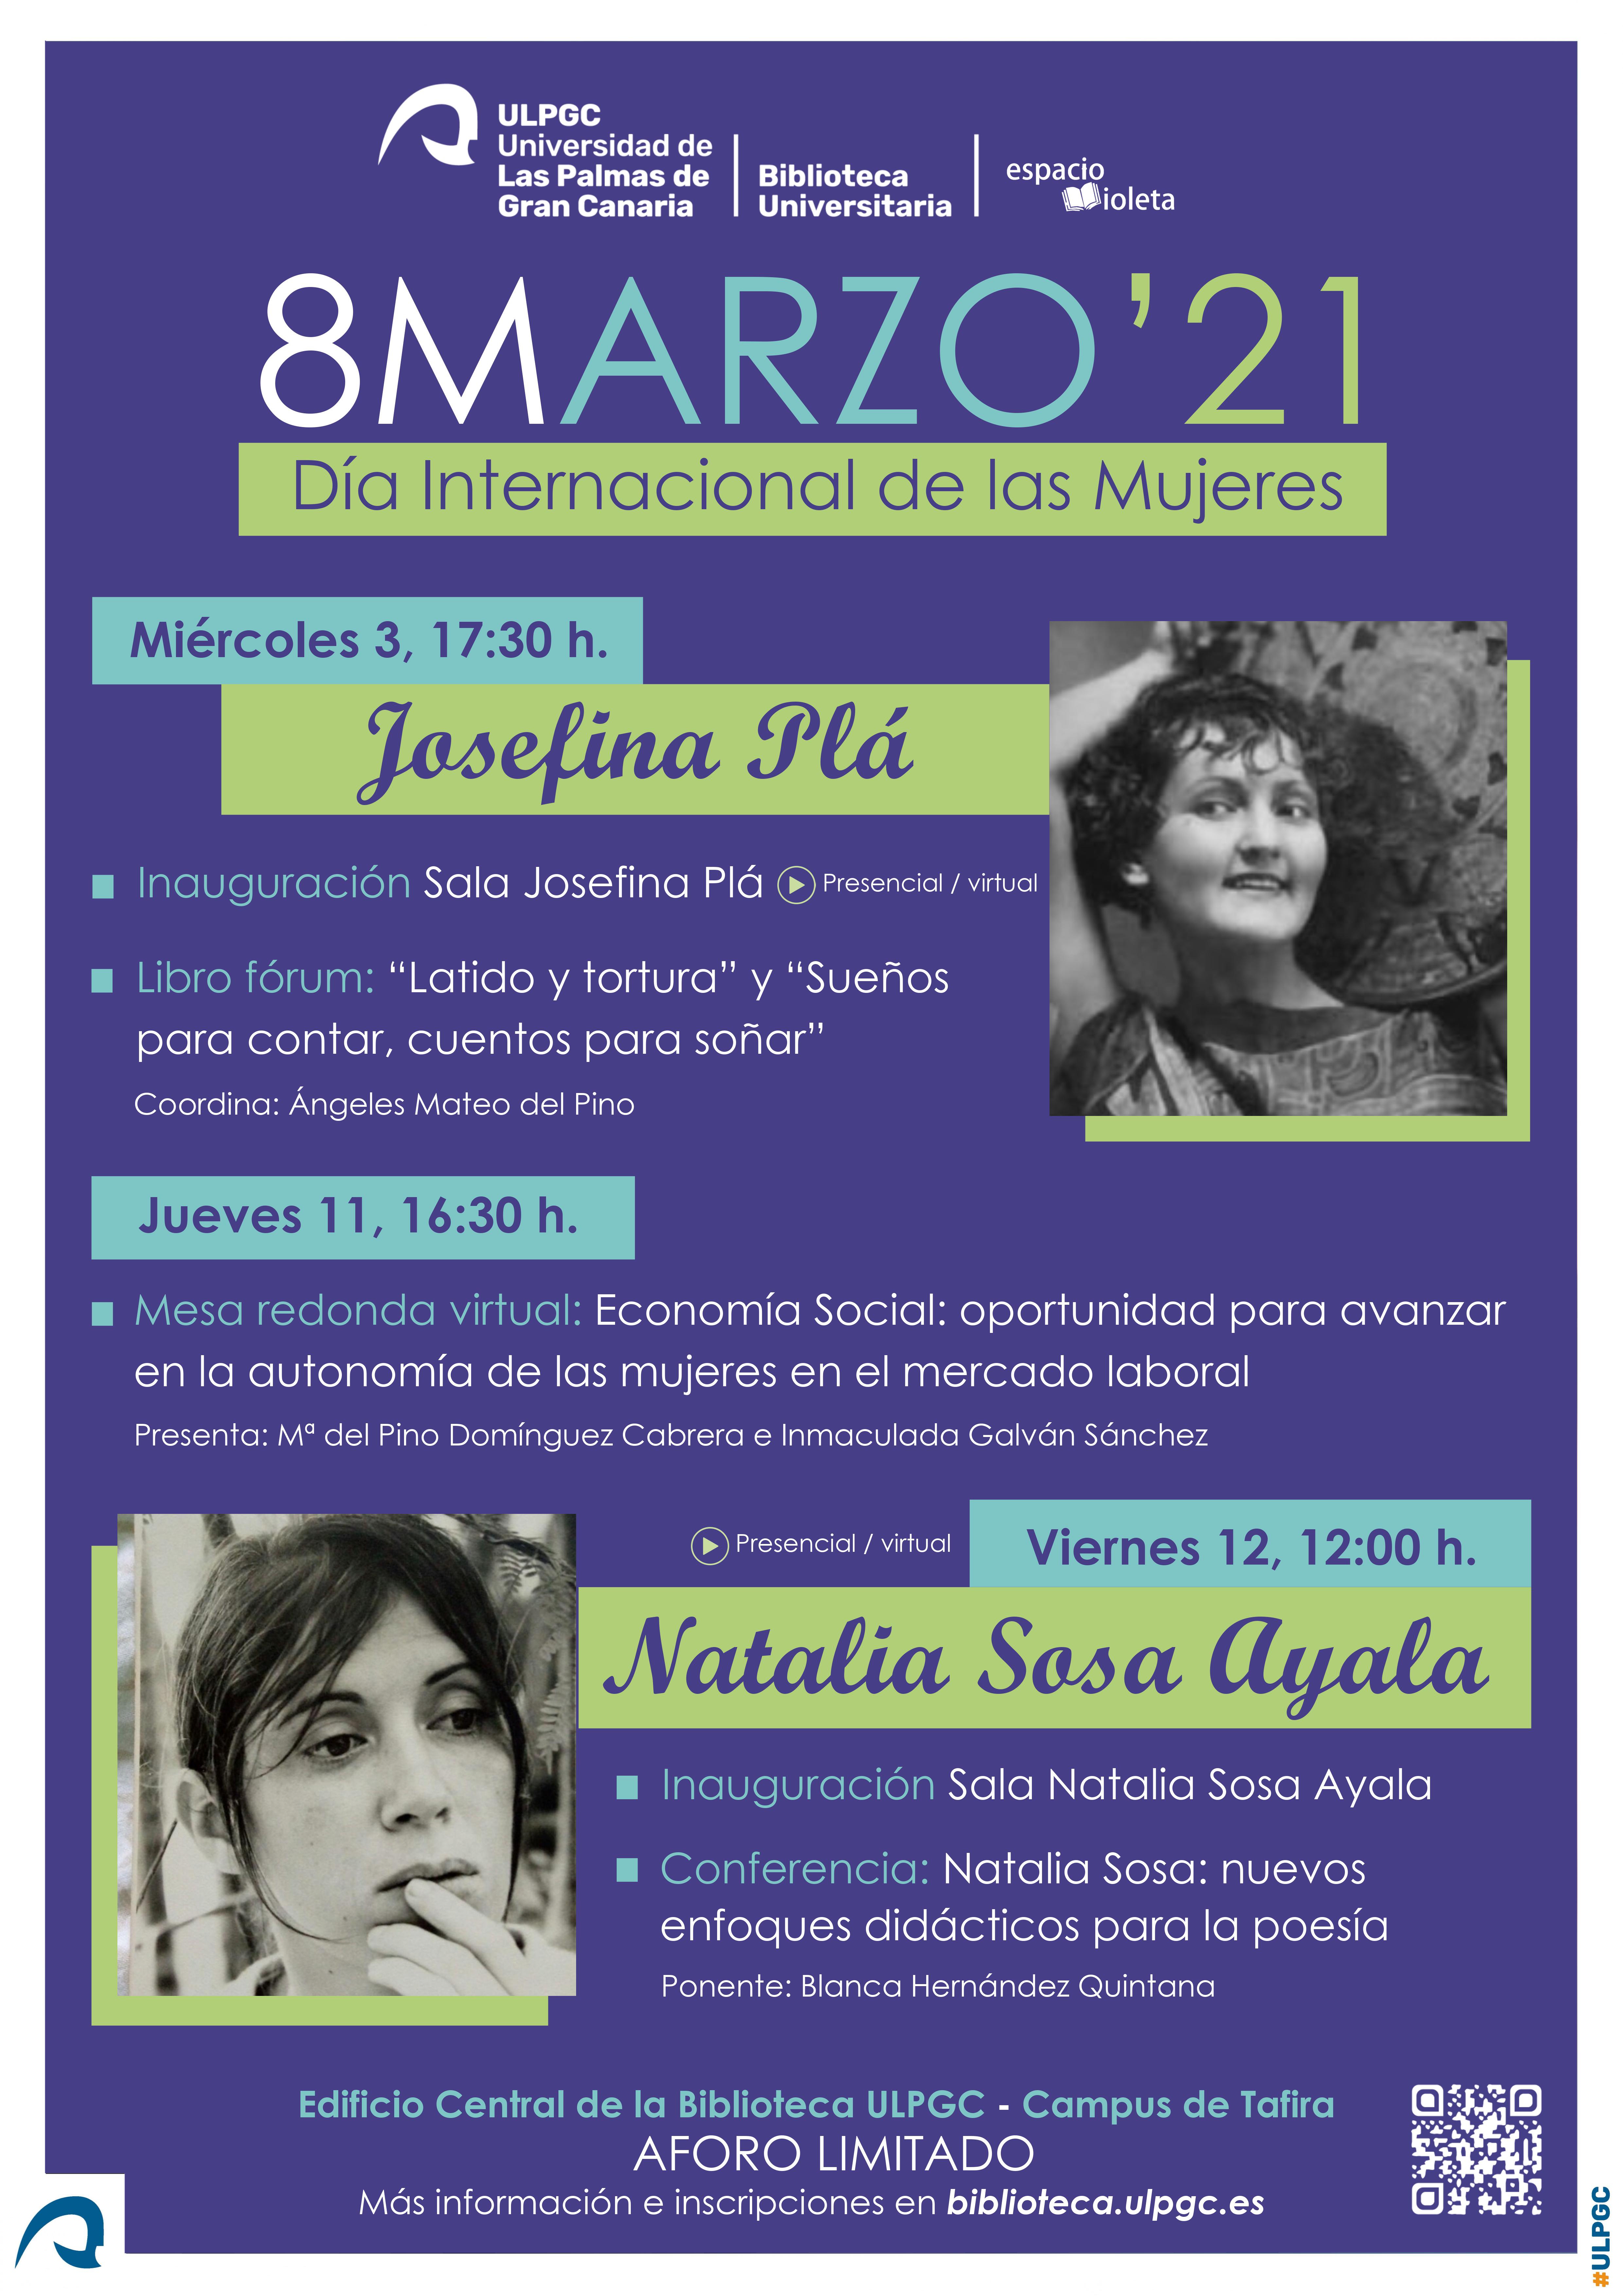 Cartel con relación de actos, ilustado con fotografías de Josefina Plá y de Natalia Sosa